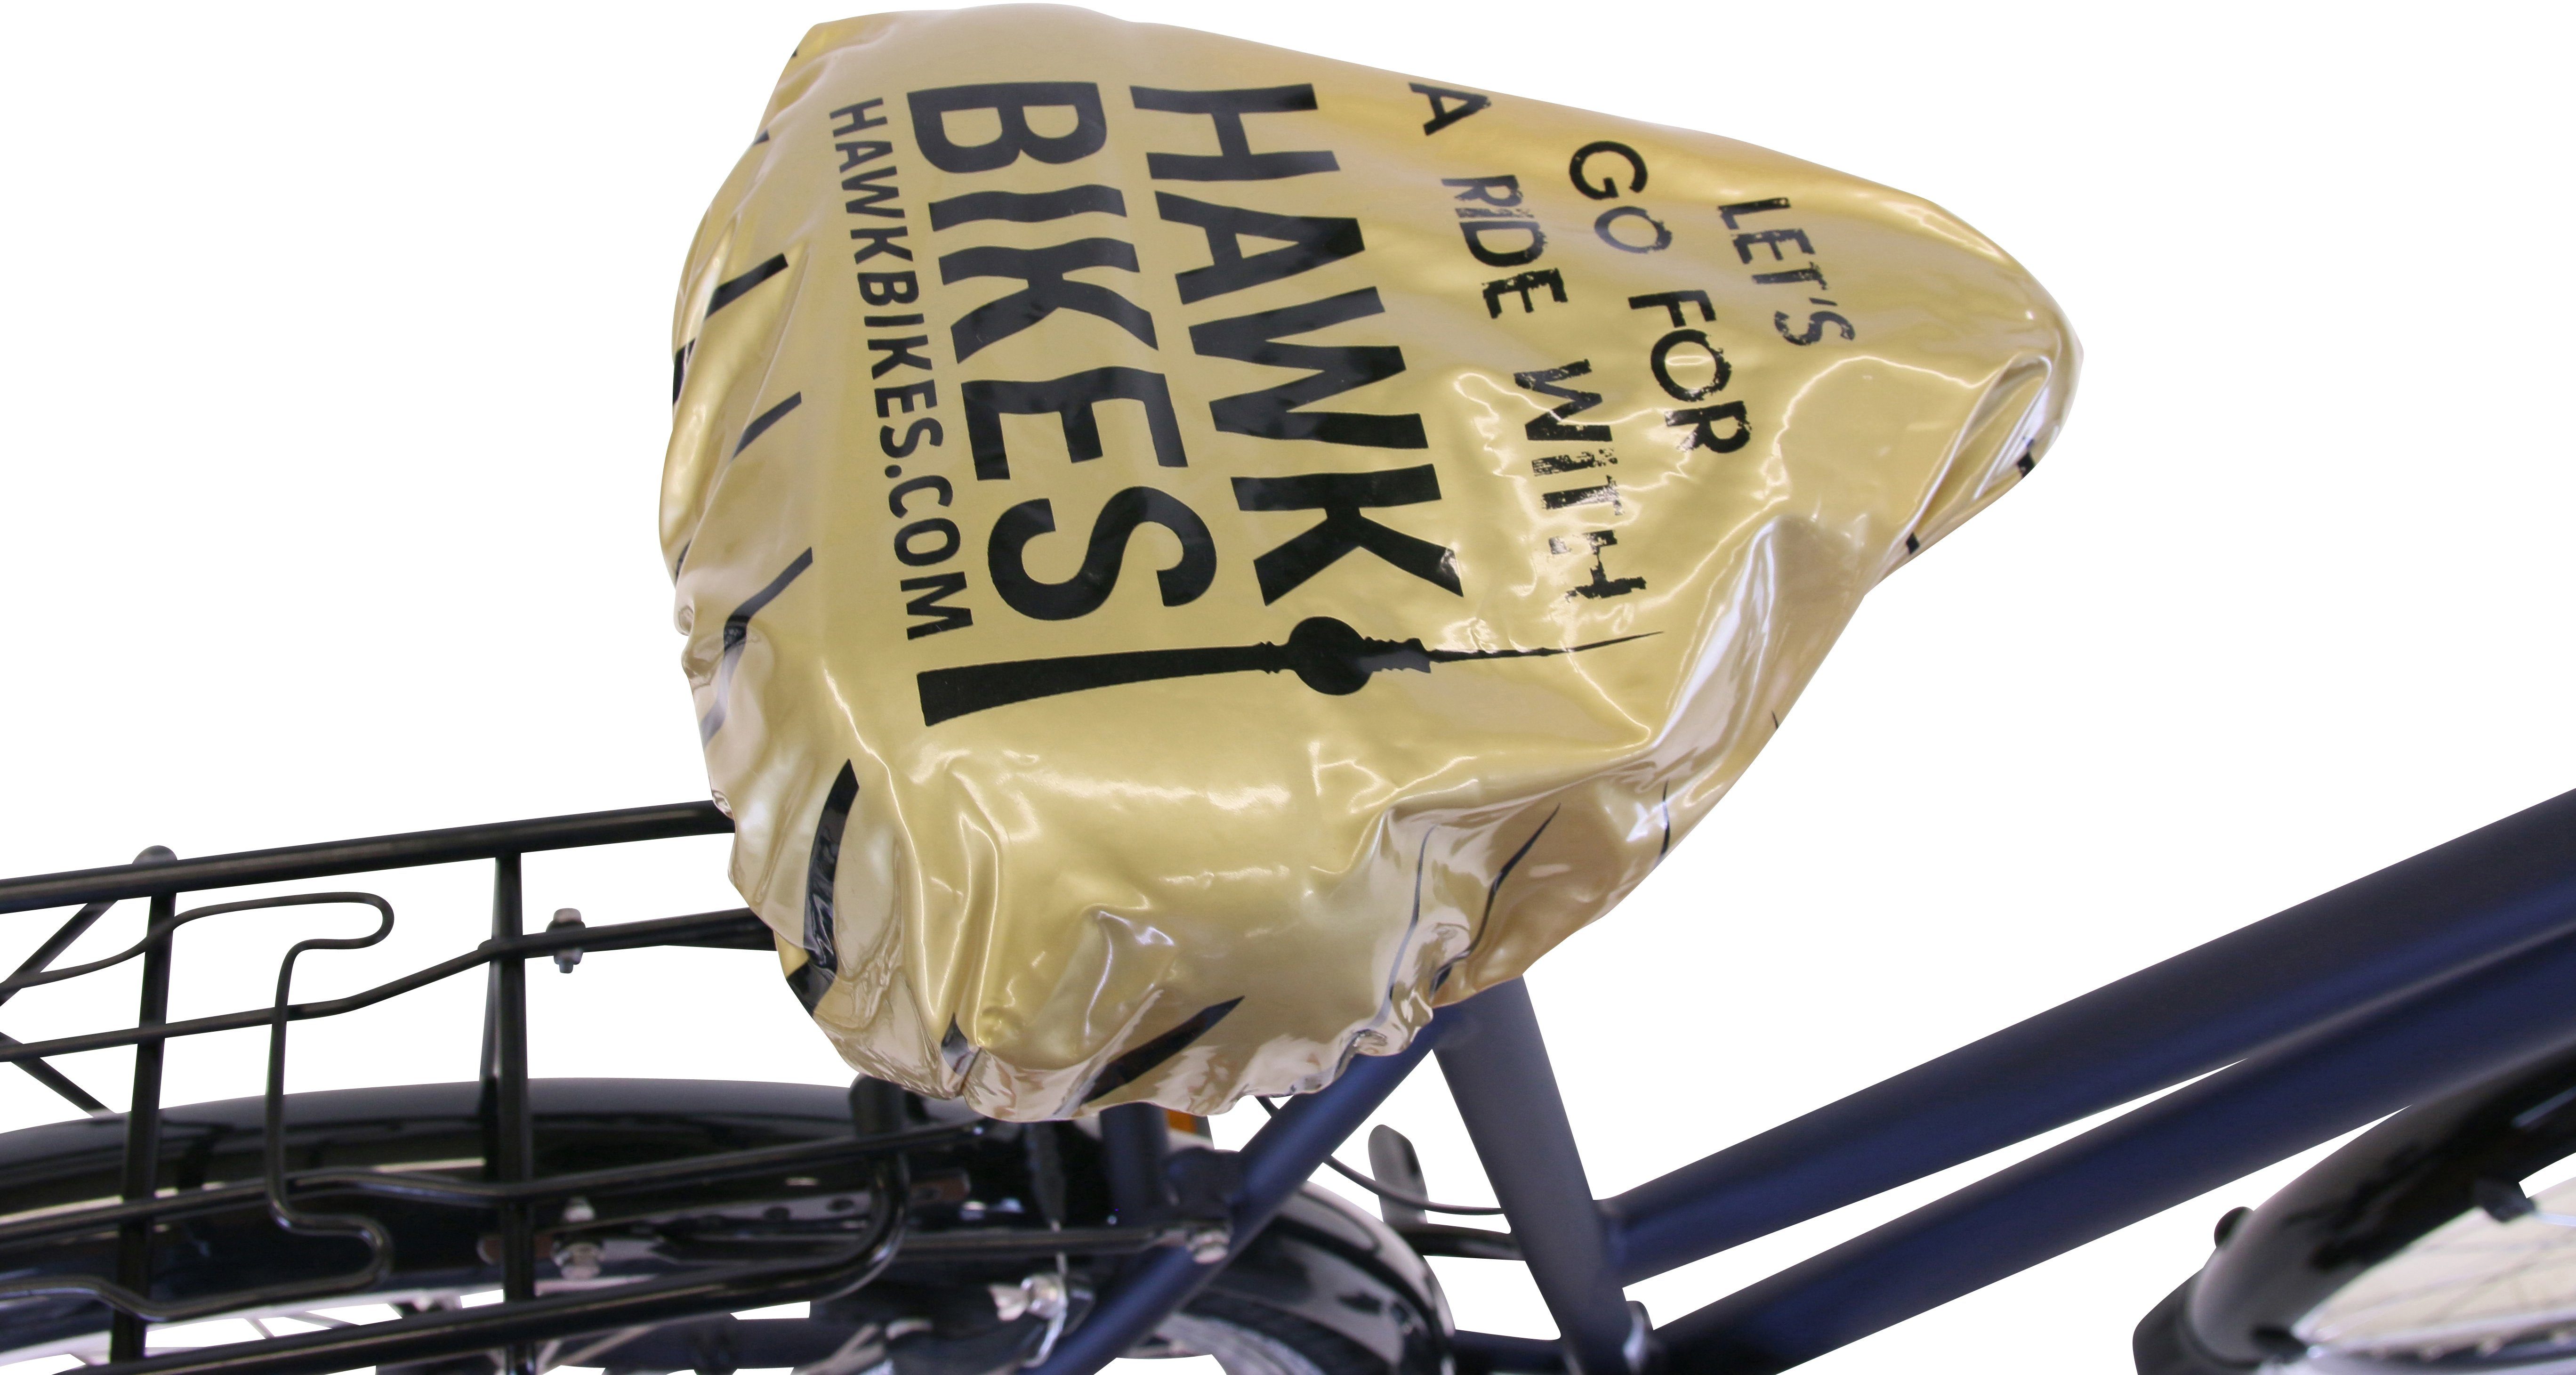 Deluxe Shimano Plus Bikes Schaltwerk Blue, Lady Cityrad Gang 7 HAWK Nexus HAWK Ocean Citytrek